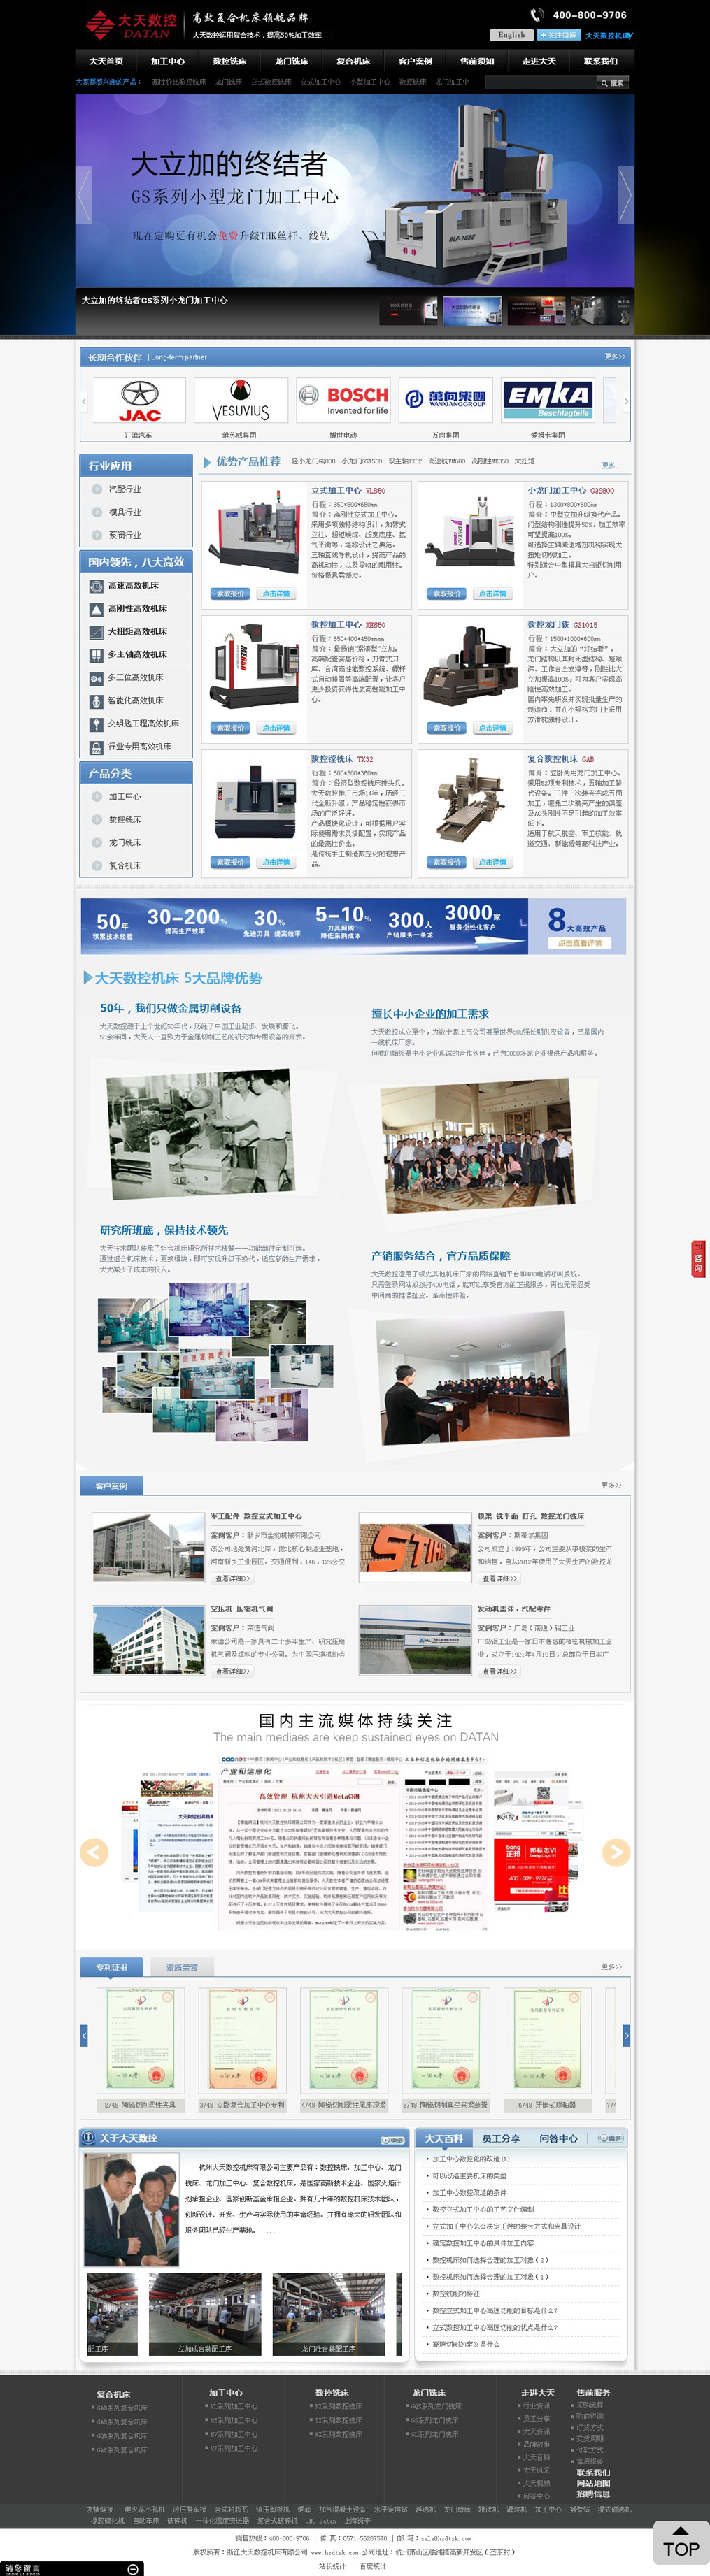 杭州大天数控机床有限公司网站效果图